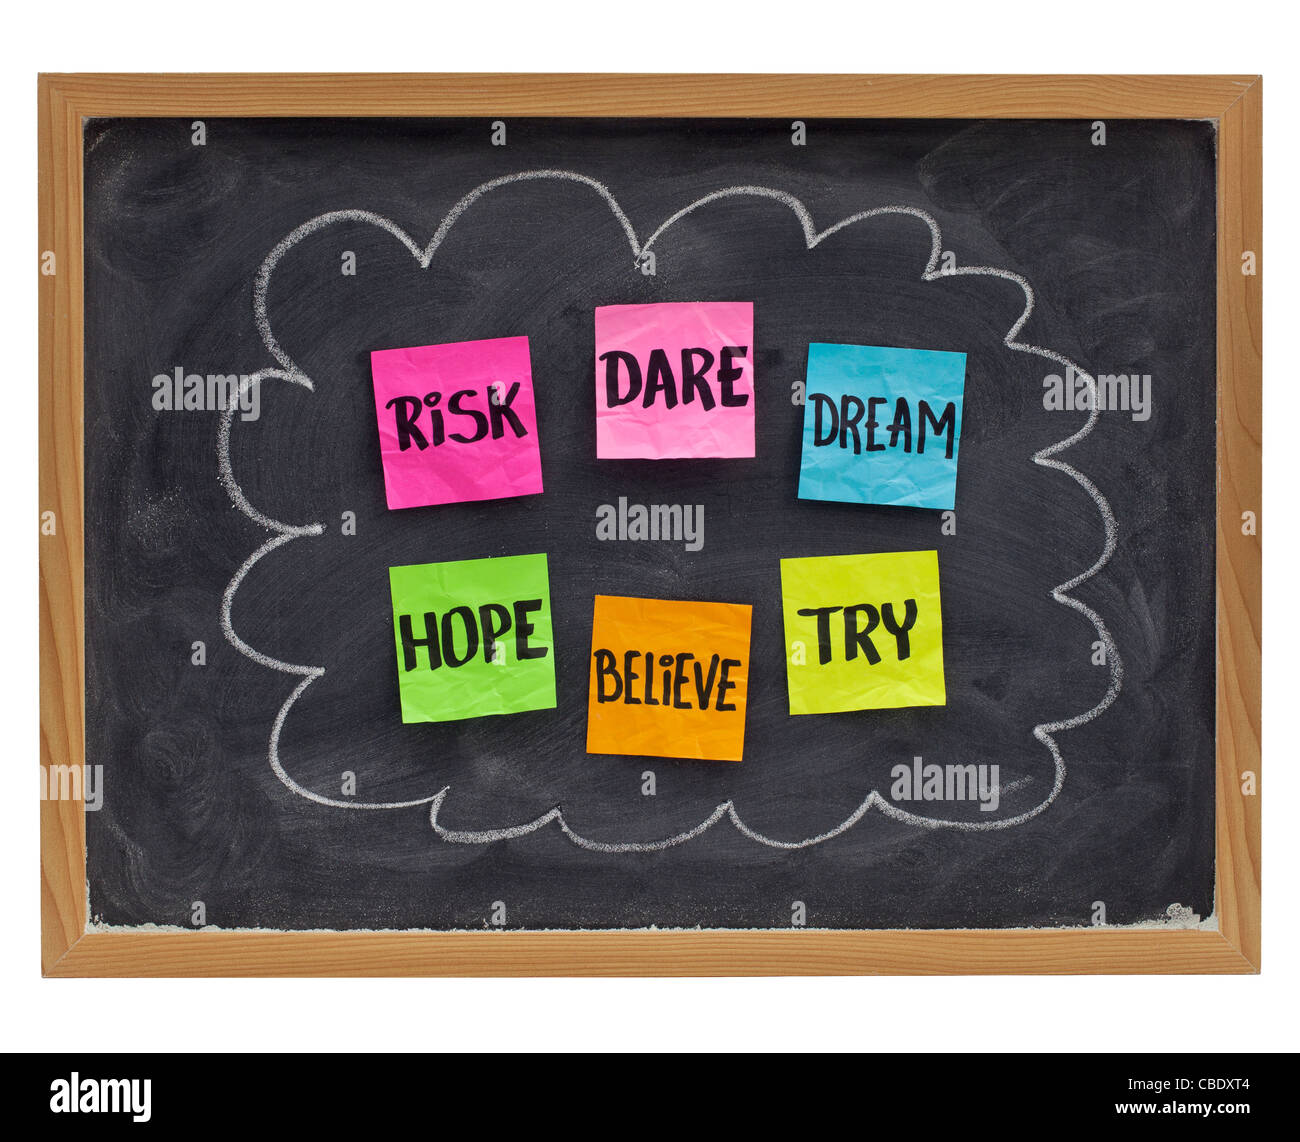 Concept de motivation (l'espoir, croire, oser, risque, essayez,dream) - notes adhésives sur tableau noir Banque D'Images